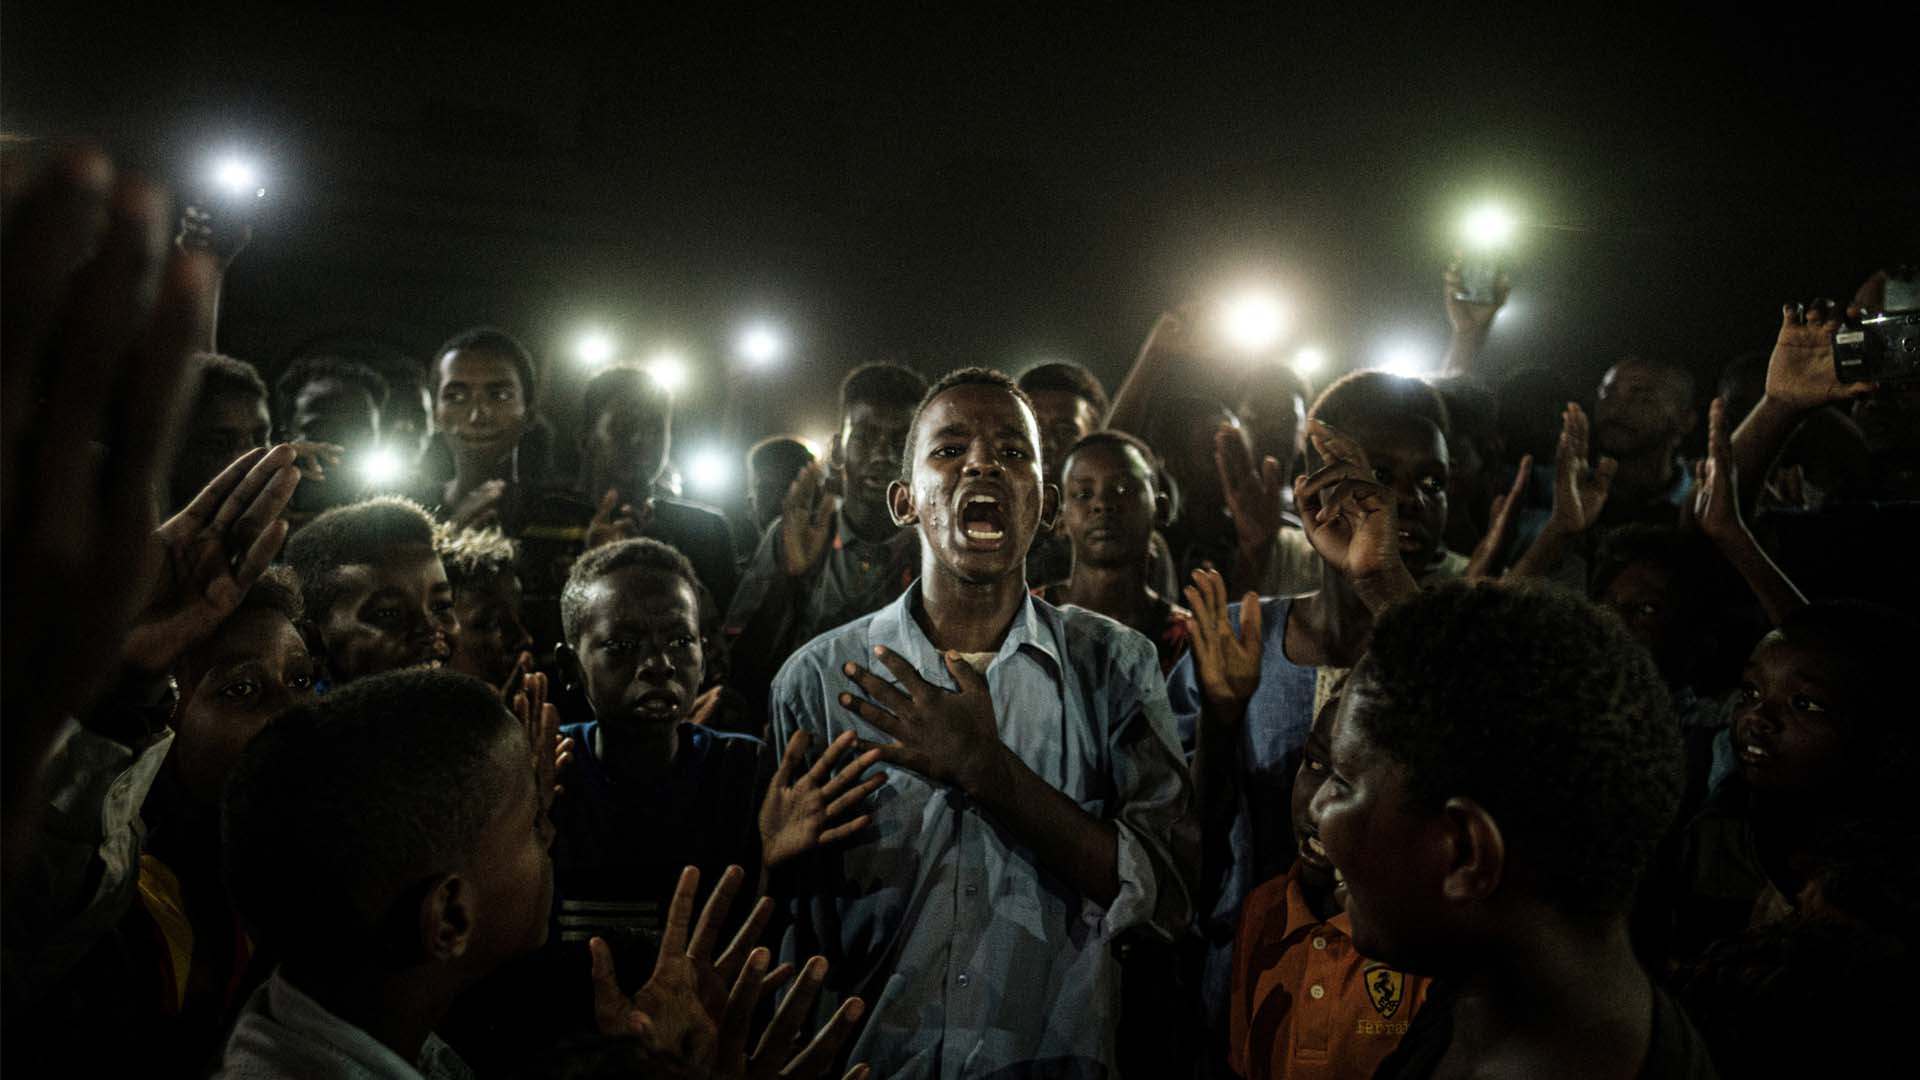 Poesía de protesta en Sudán: Yasuyoshi Chiba se alza con el World Press Photo 2020